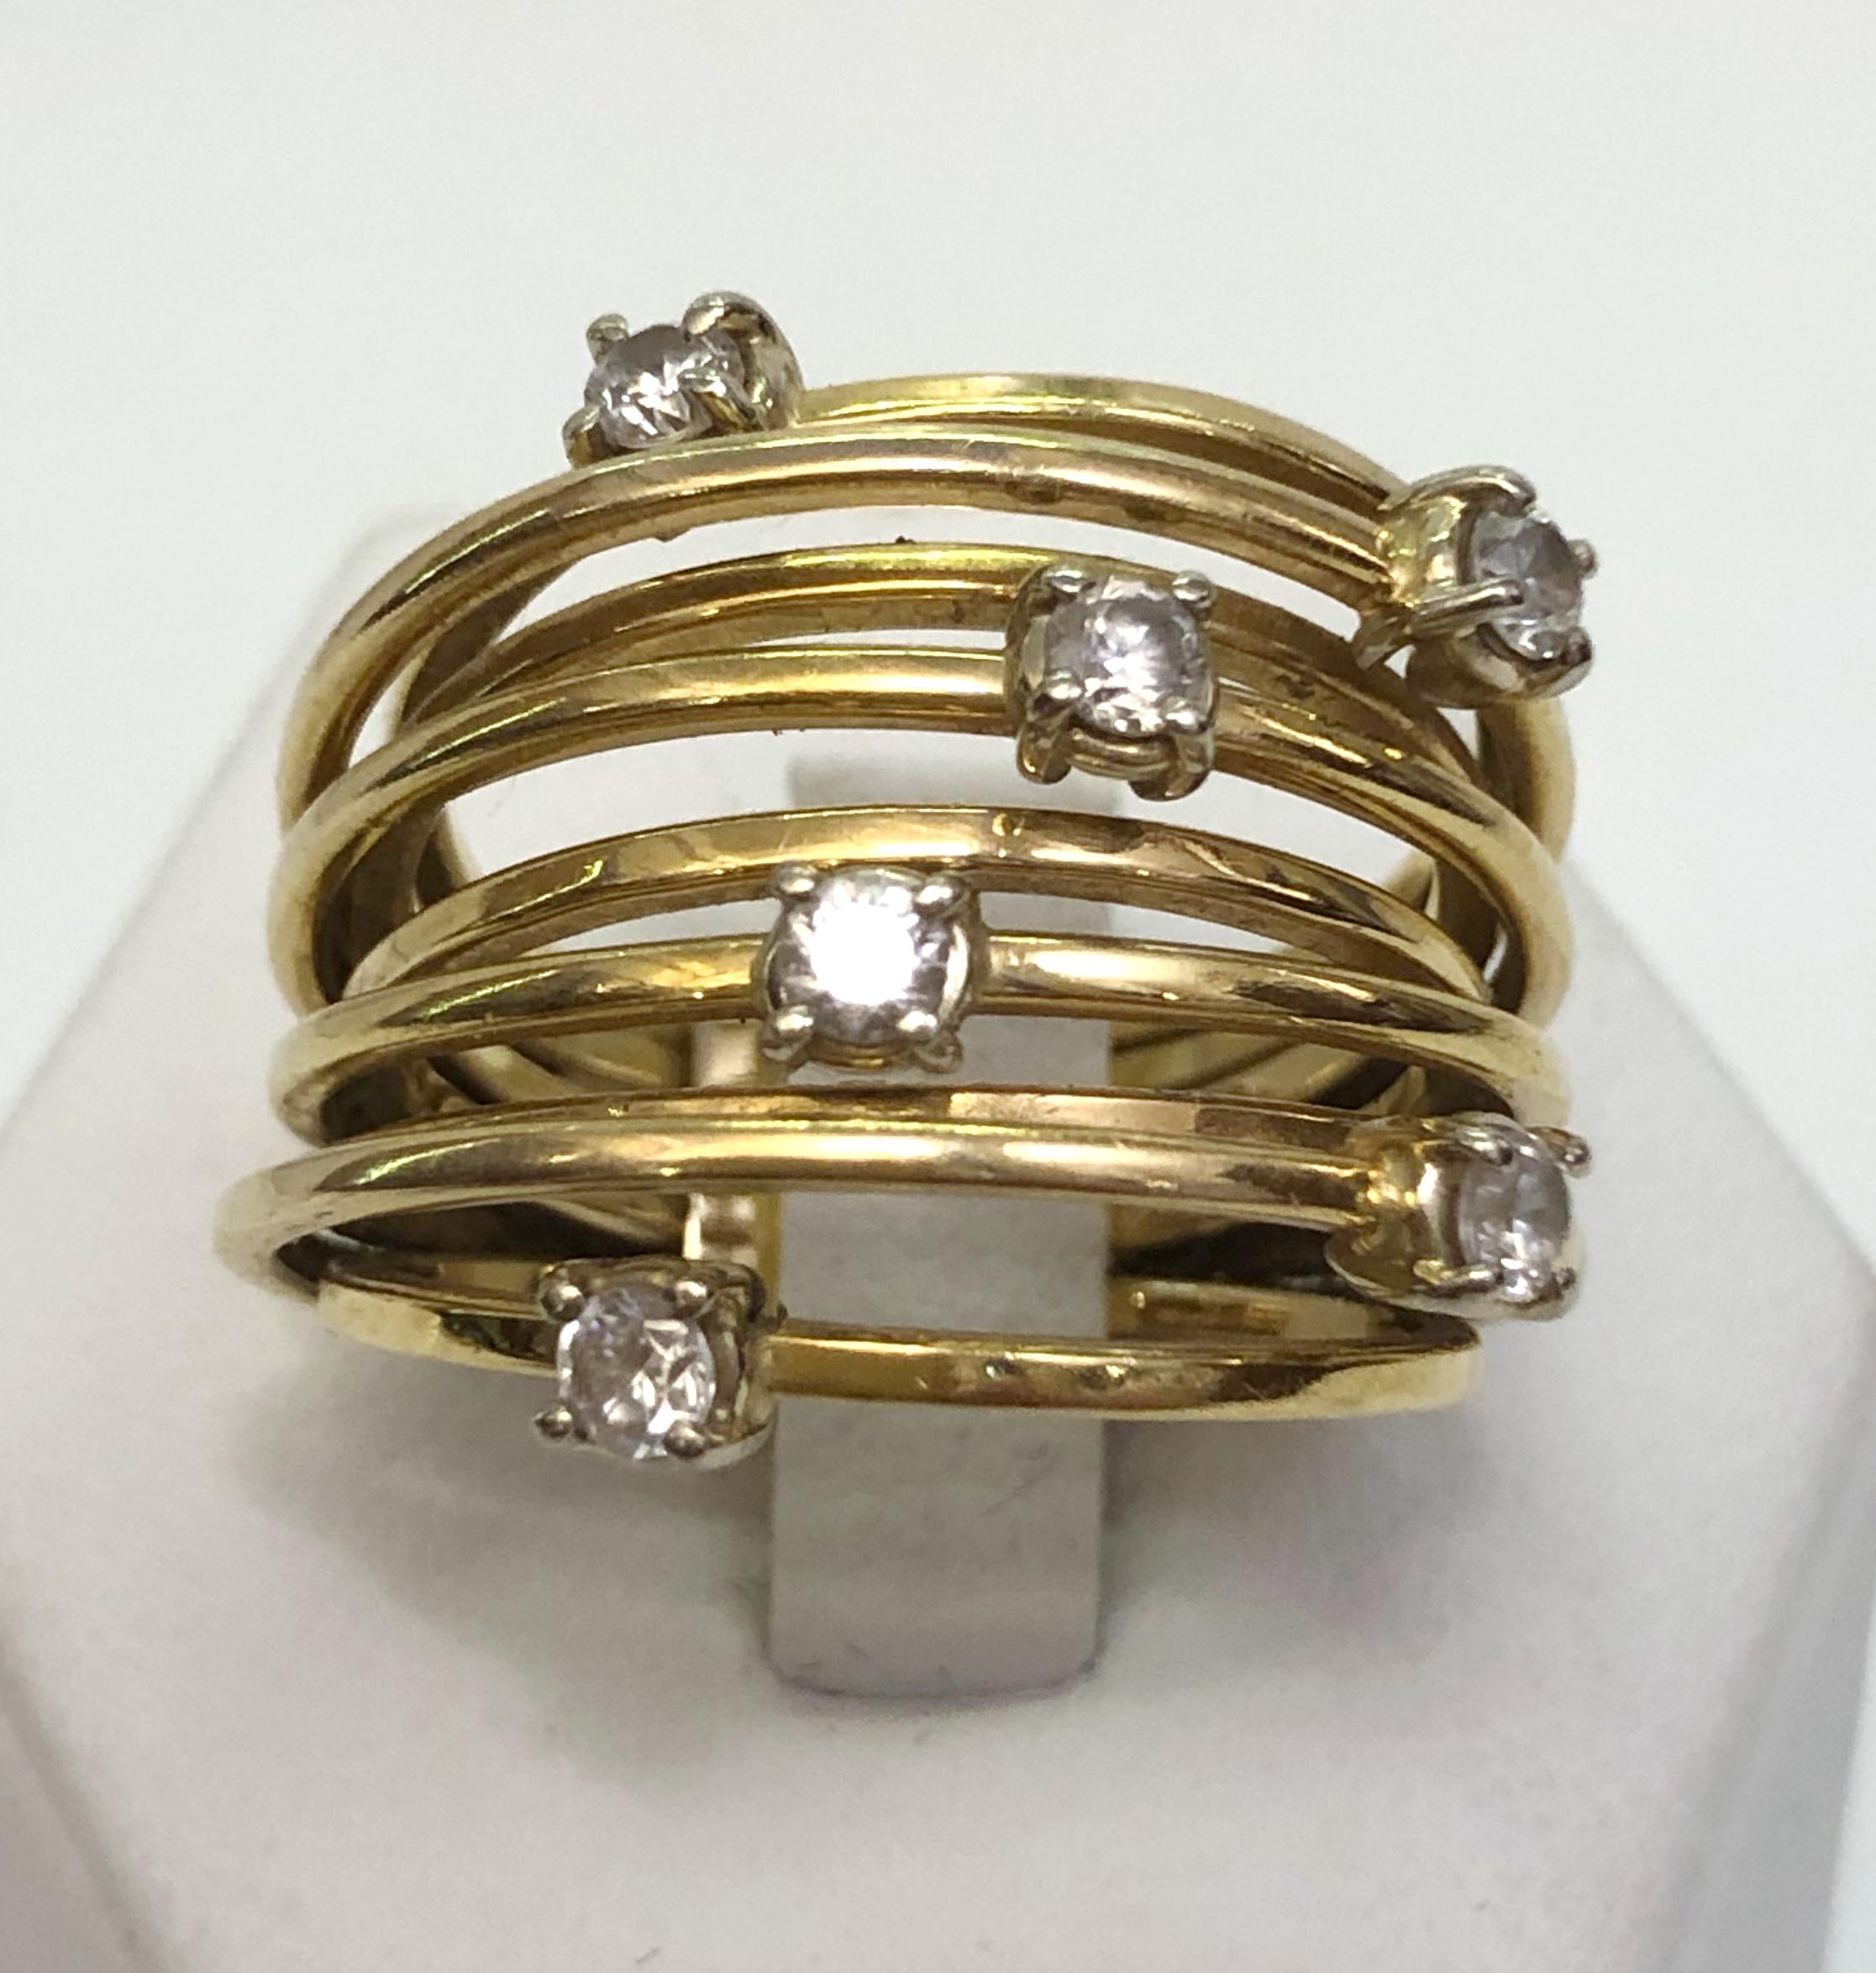 Mehrreihiger Ring aus 18 Karat Gelbgold mit Diamanten / Made in Italy 1980er Jahre
Ringgröße US 7